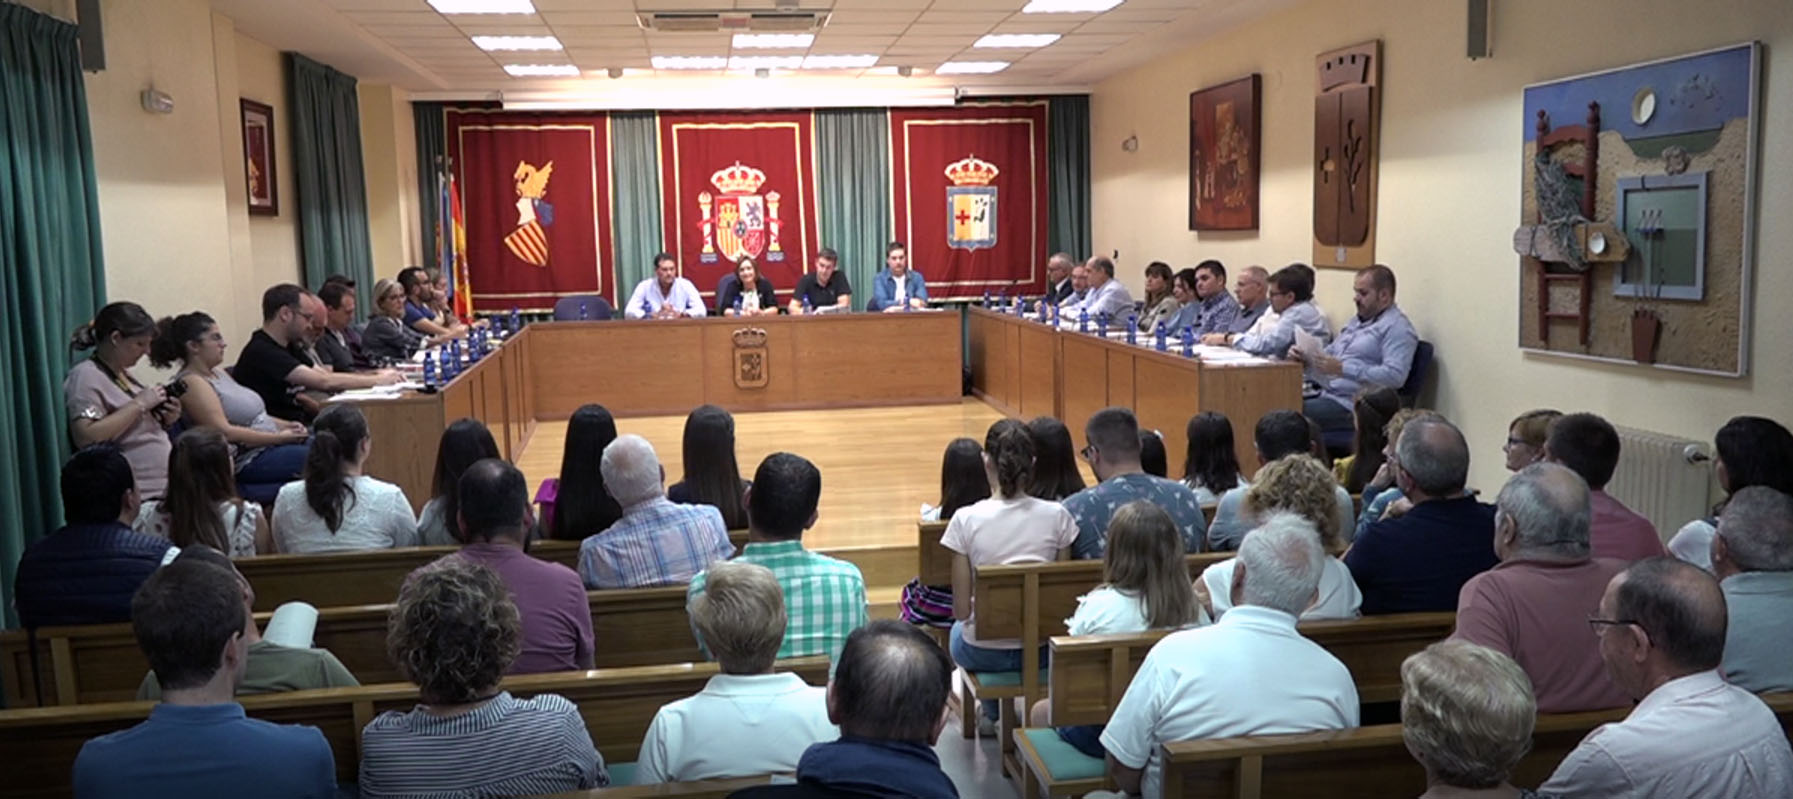 Benicarló, l'Ajuntament crea una nova plataforma per consultar els plens per d'internet